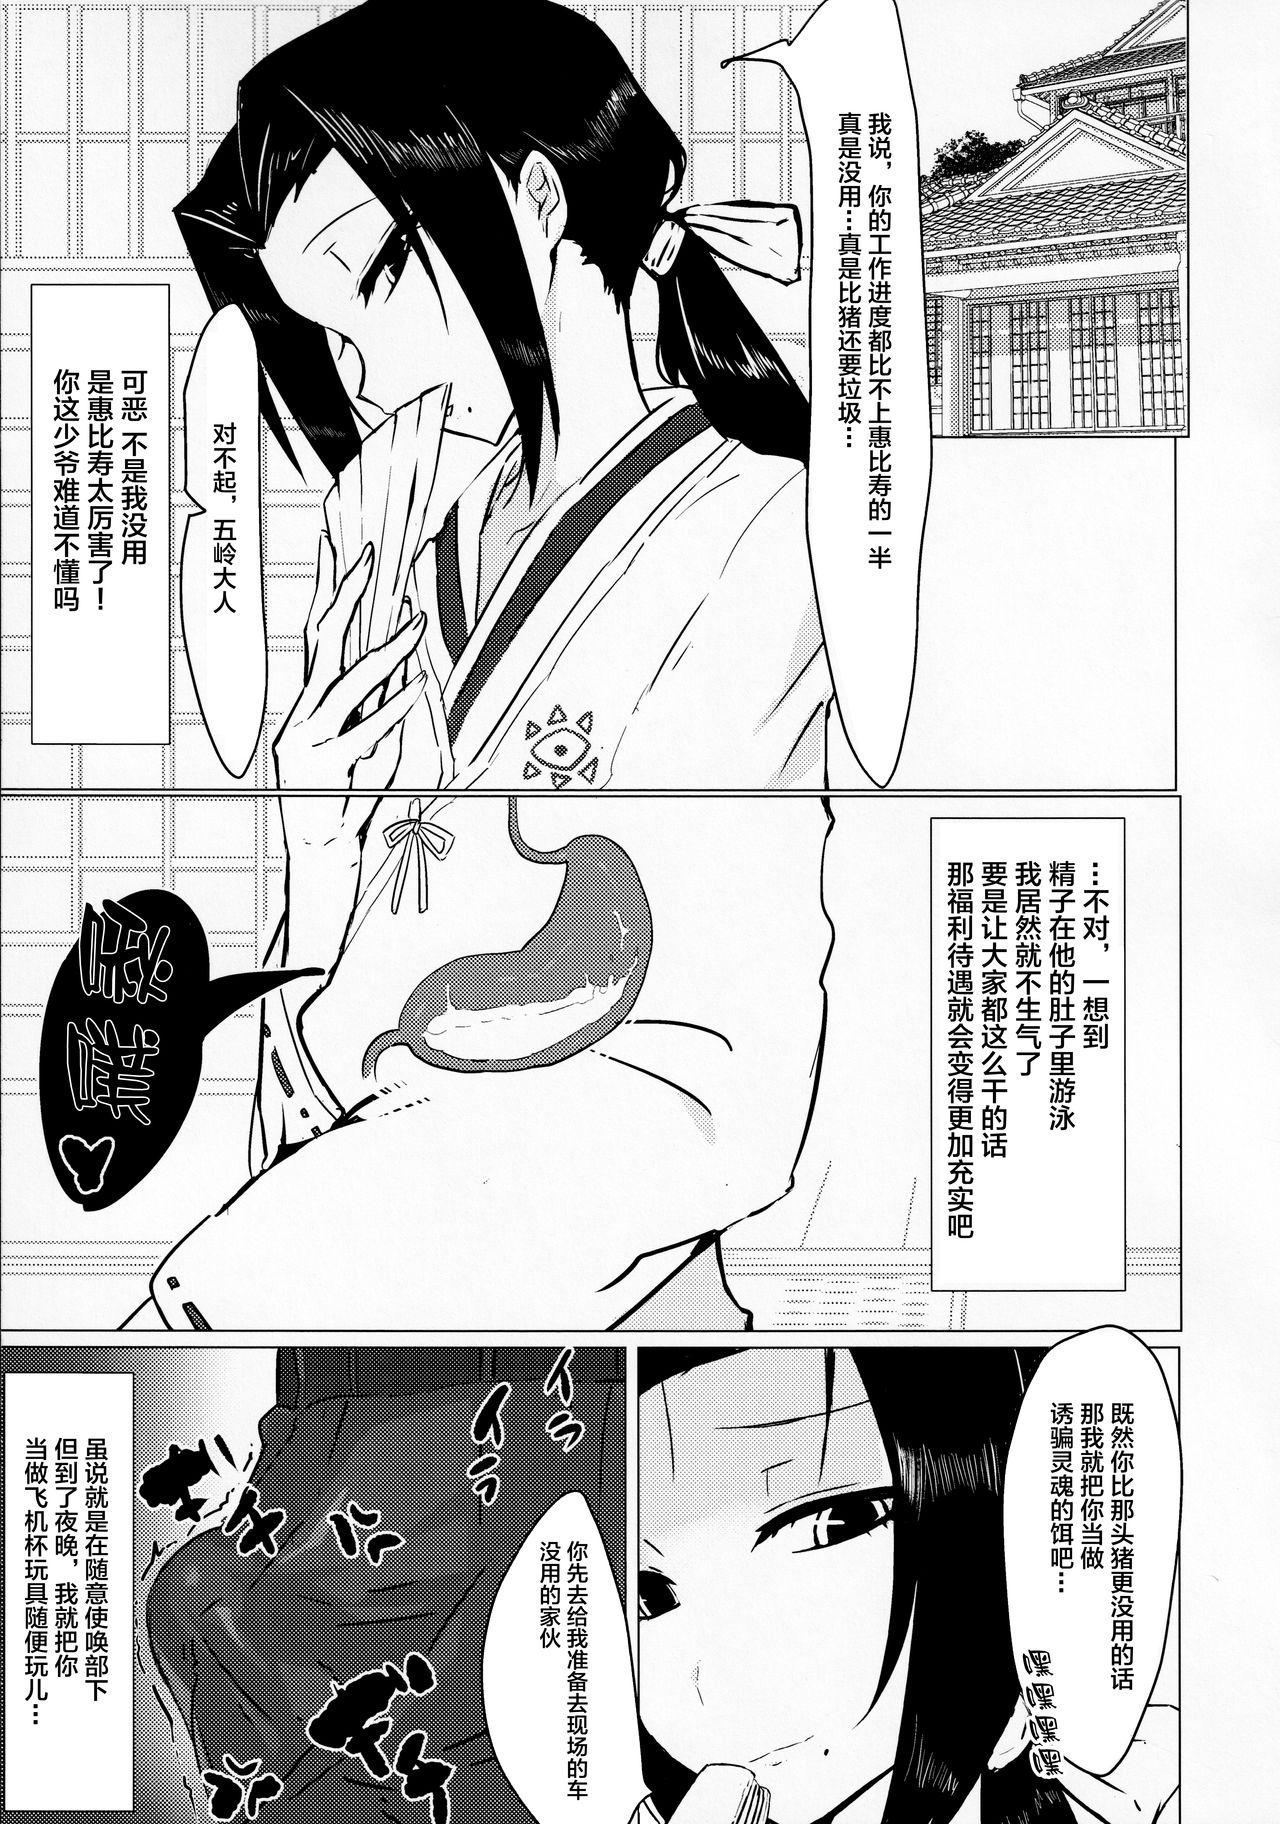 English Goryou Suikan - Muhyo to rouji no mahouritsu soudan jimusho Whipping - Page 6